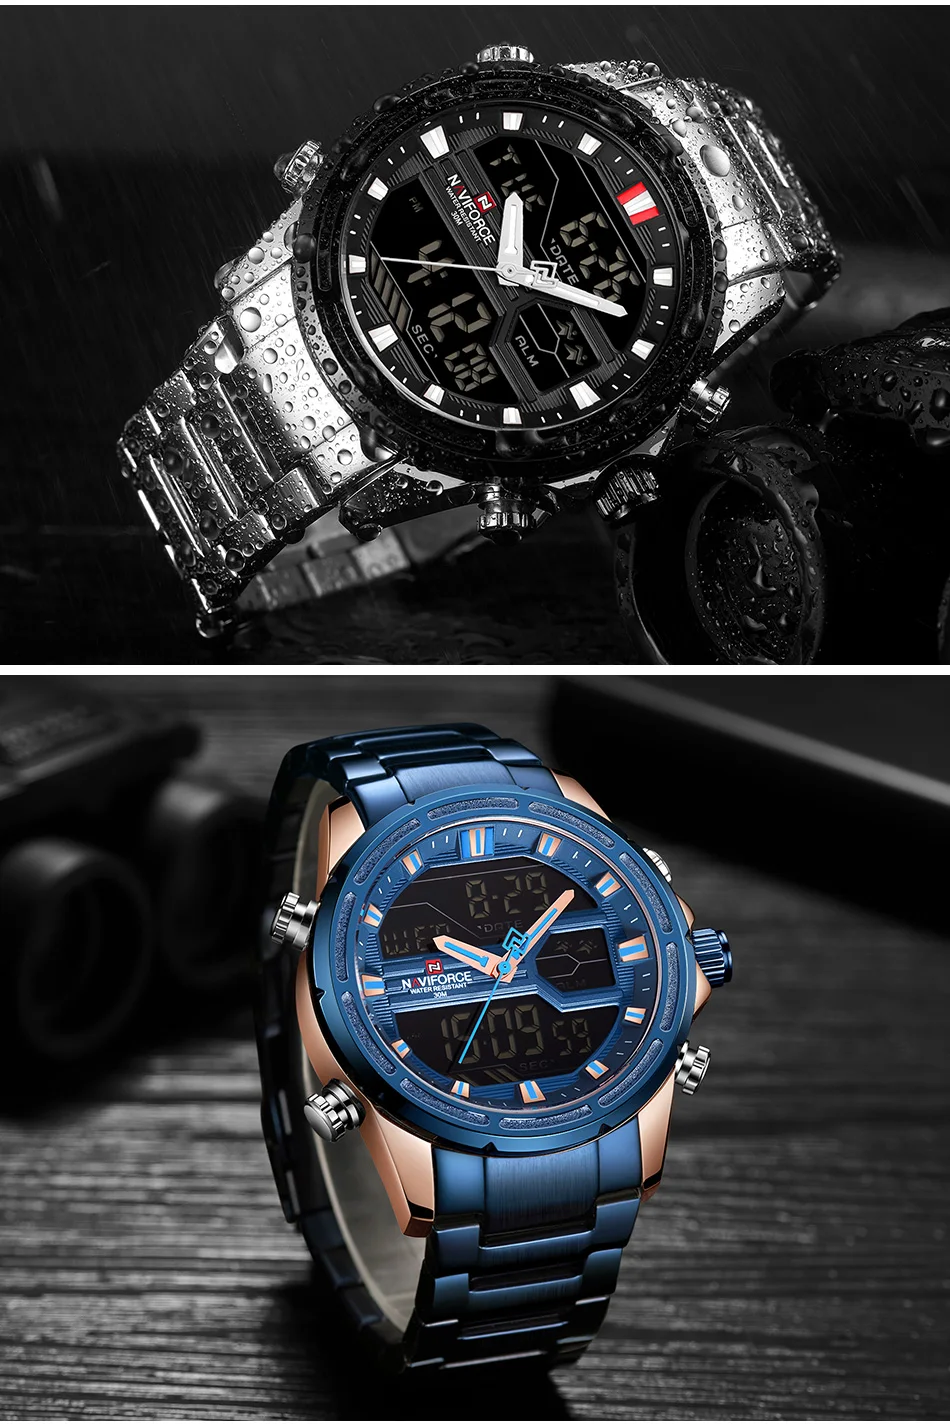 NAVIFORCE мужские часы спортивные кварцевые цифровые мужские часы с коробкой набор для продажи мужские военные водонепроницаемые часы Relogio Masculino